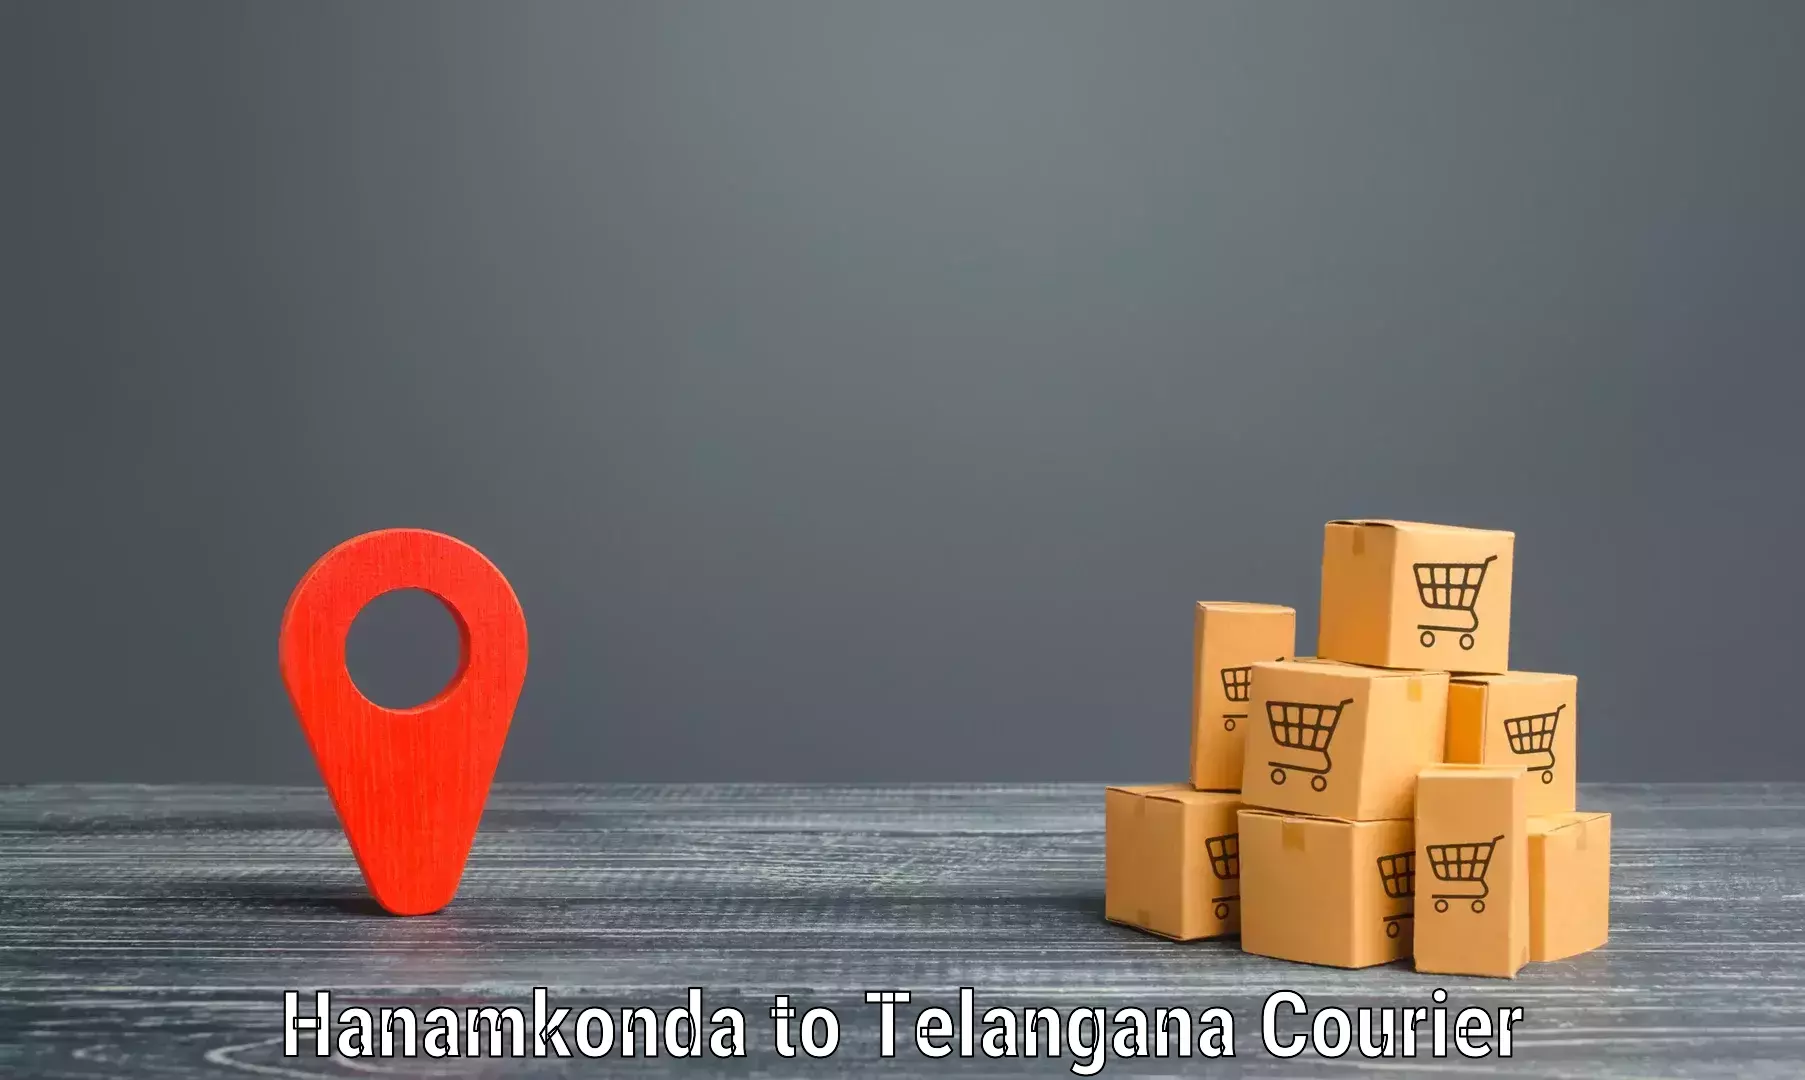 Optimized delivery routes in Hanamkonda to Bellampalli